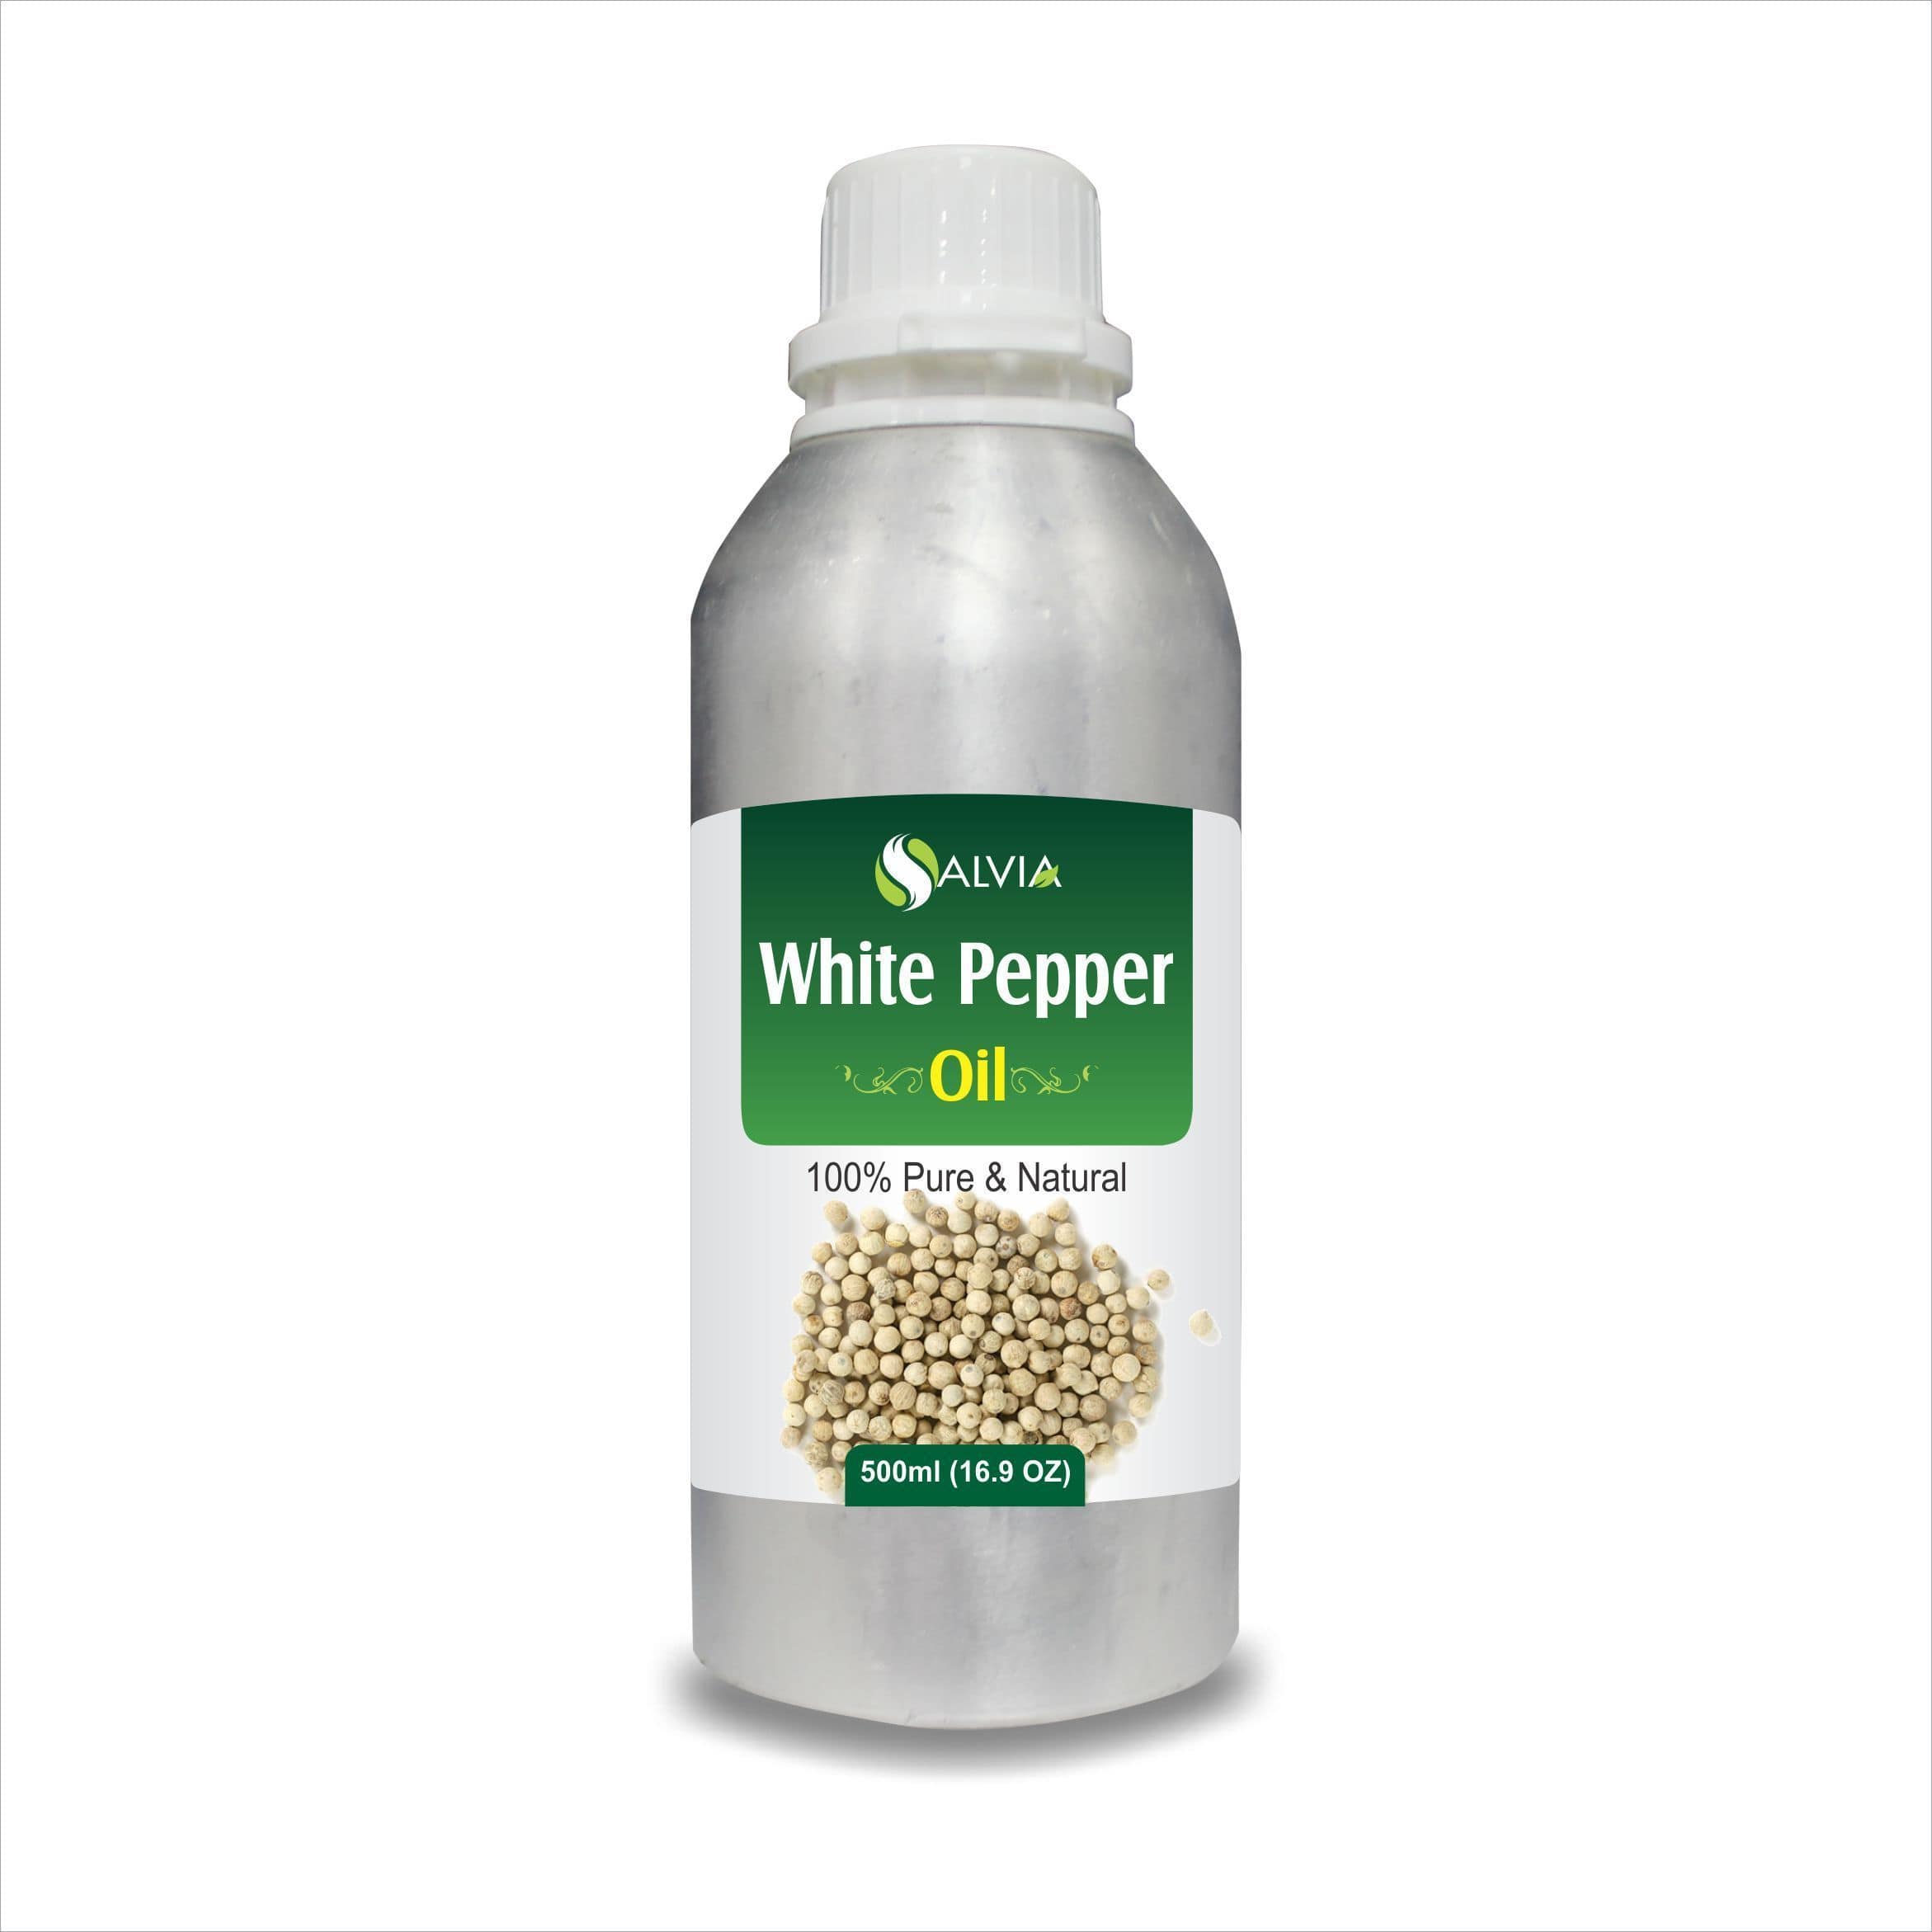 white pepper benefits for eyes